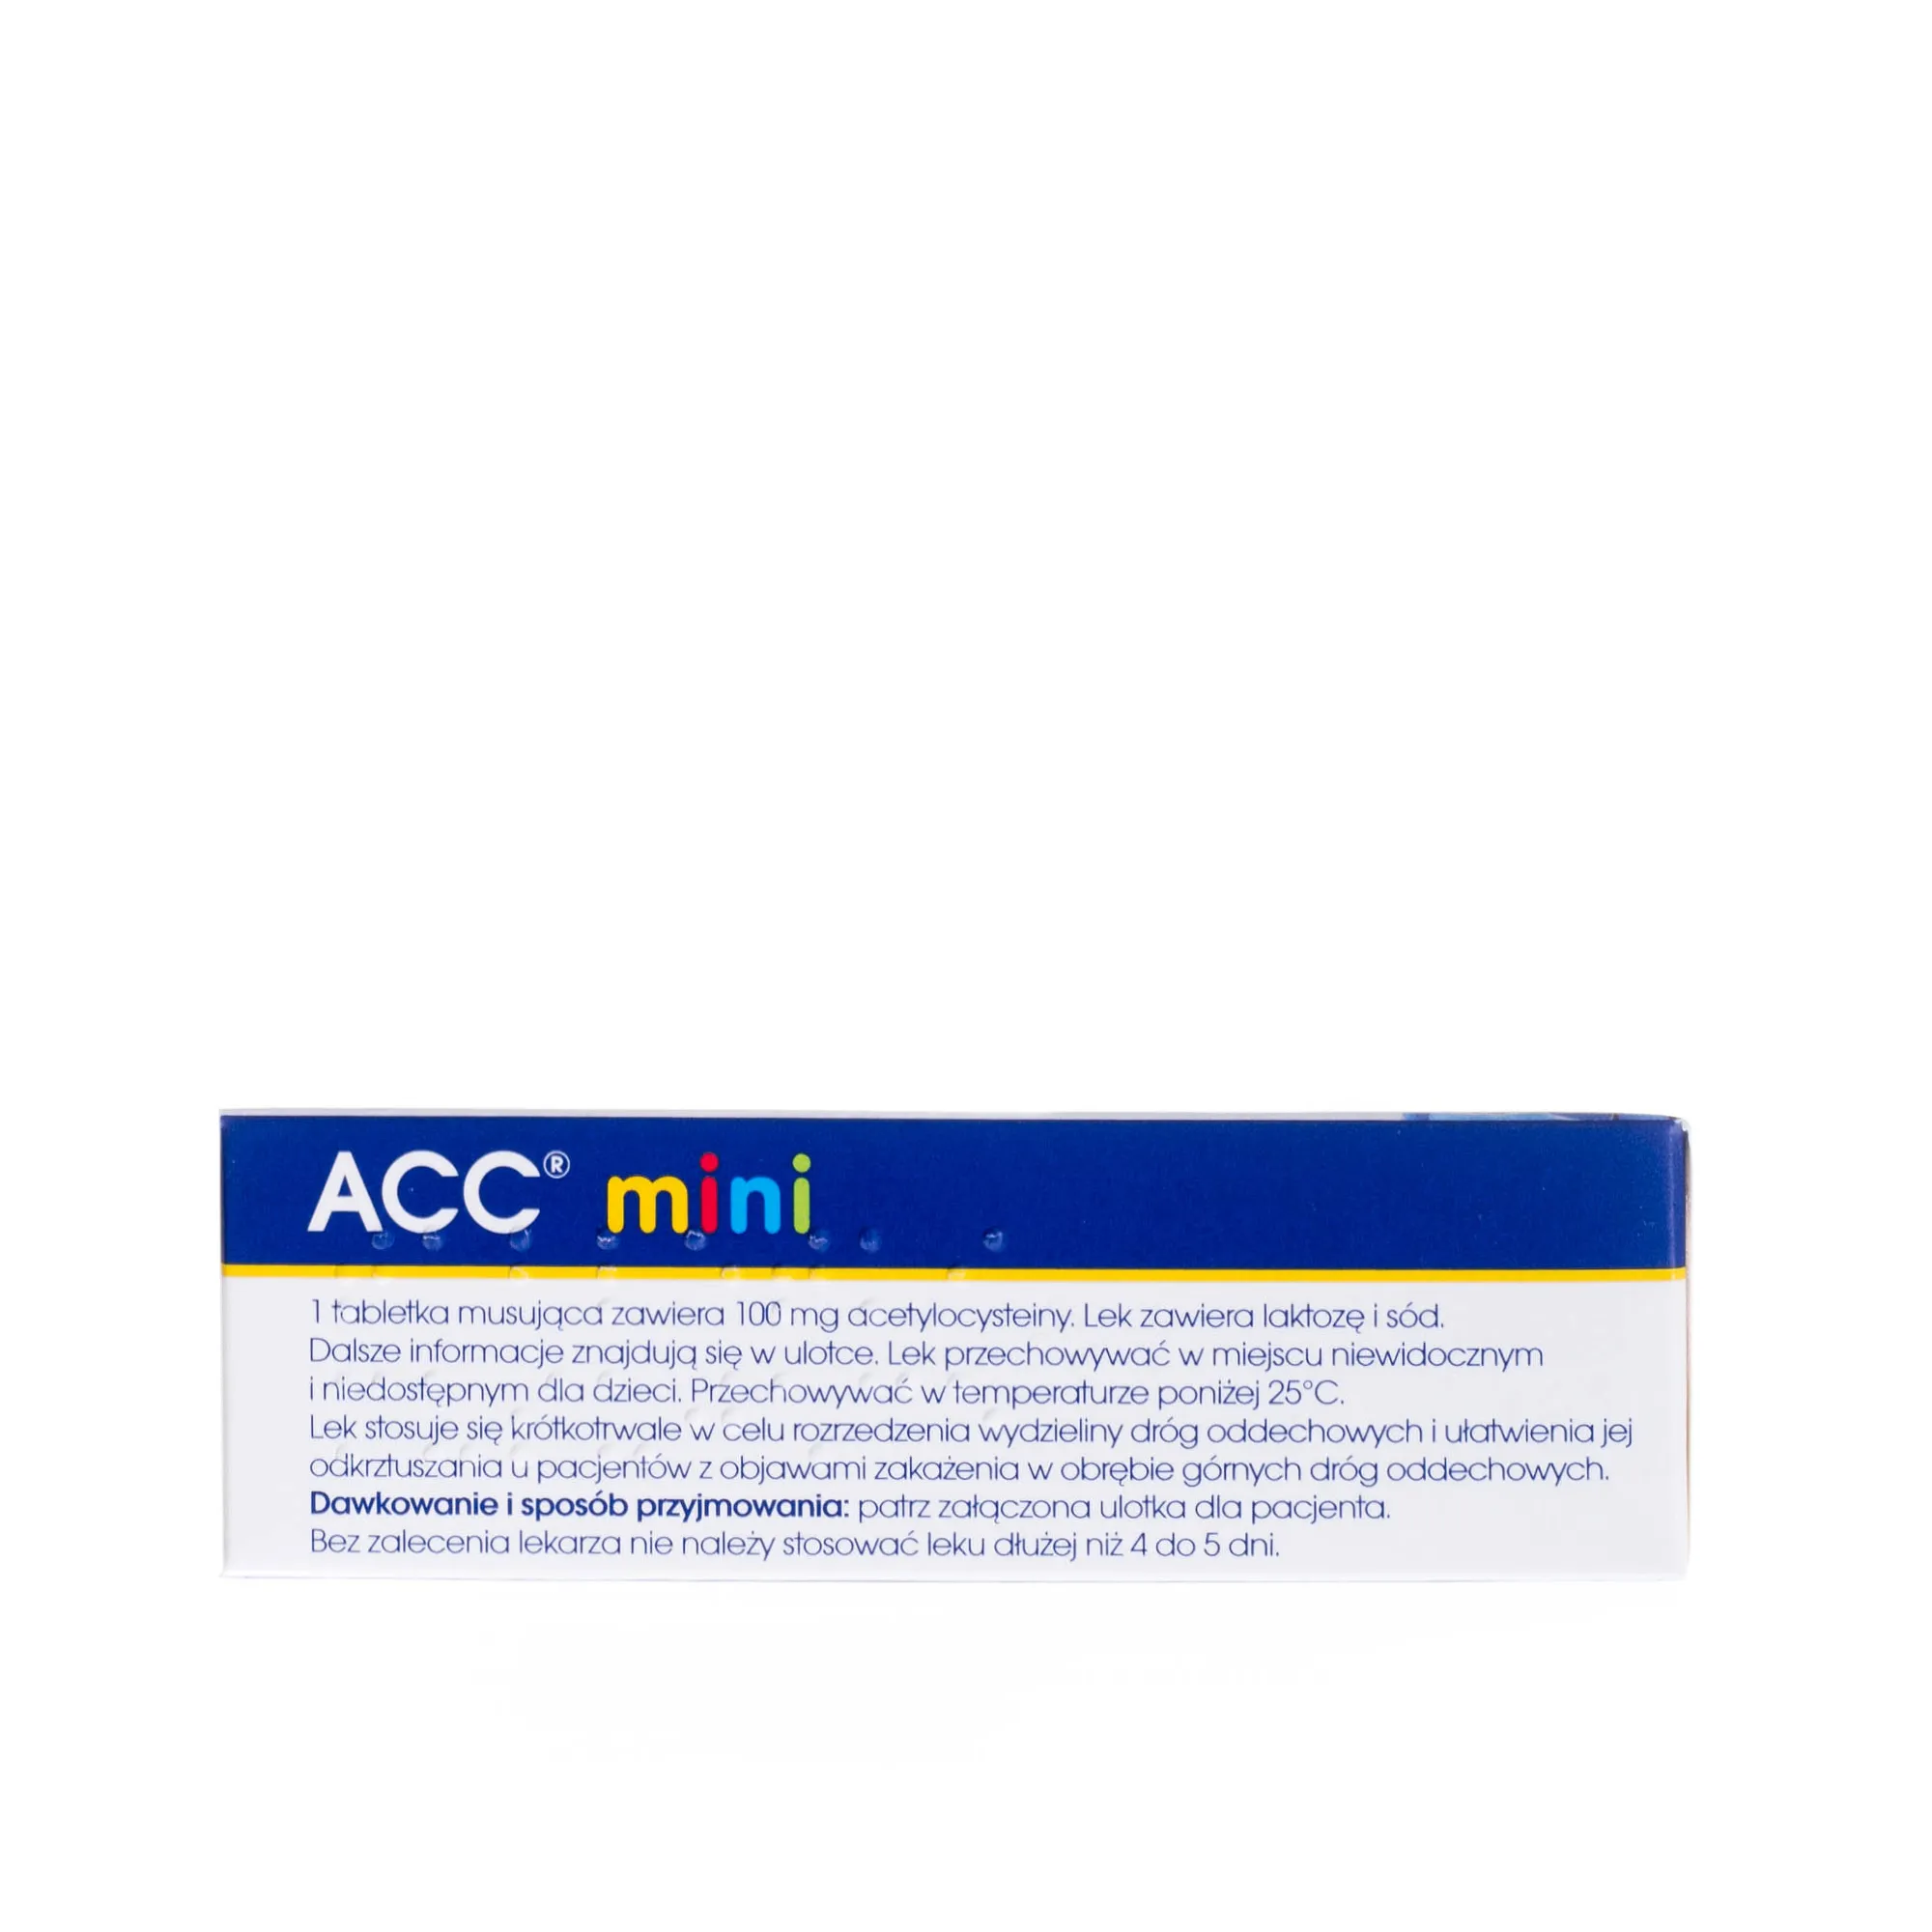 ACC mini, Acetylcysteinum 100 mg, ułatwia odkrztuszanie 20 tabletek musujących 